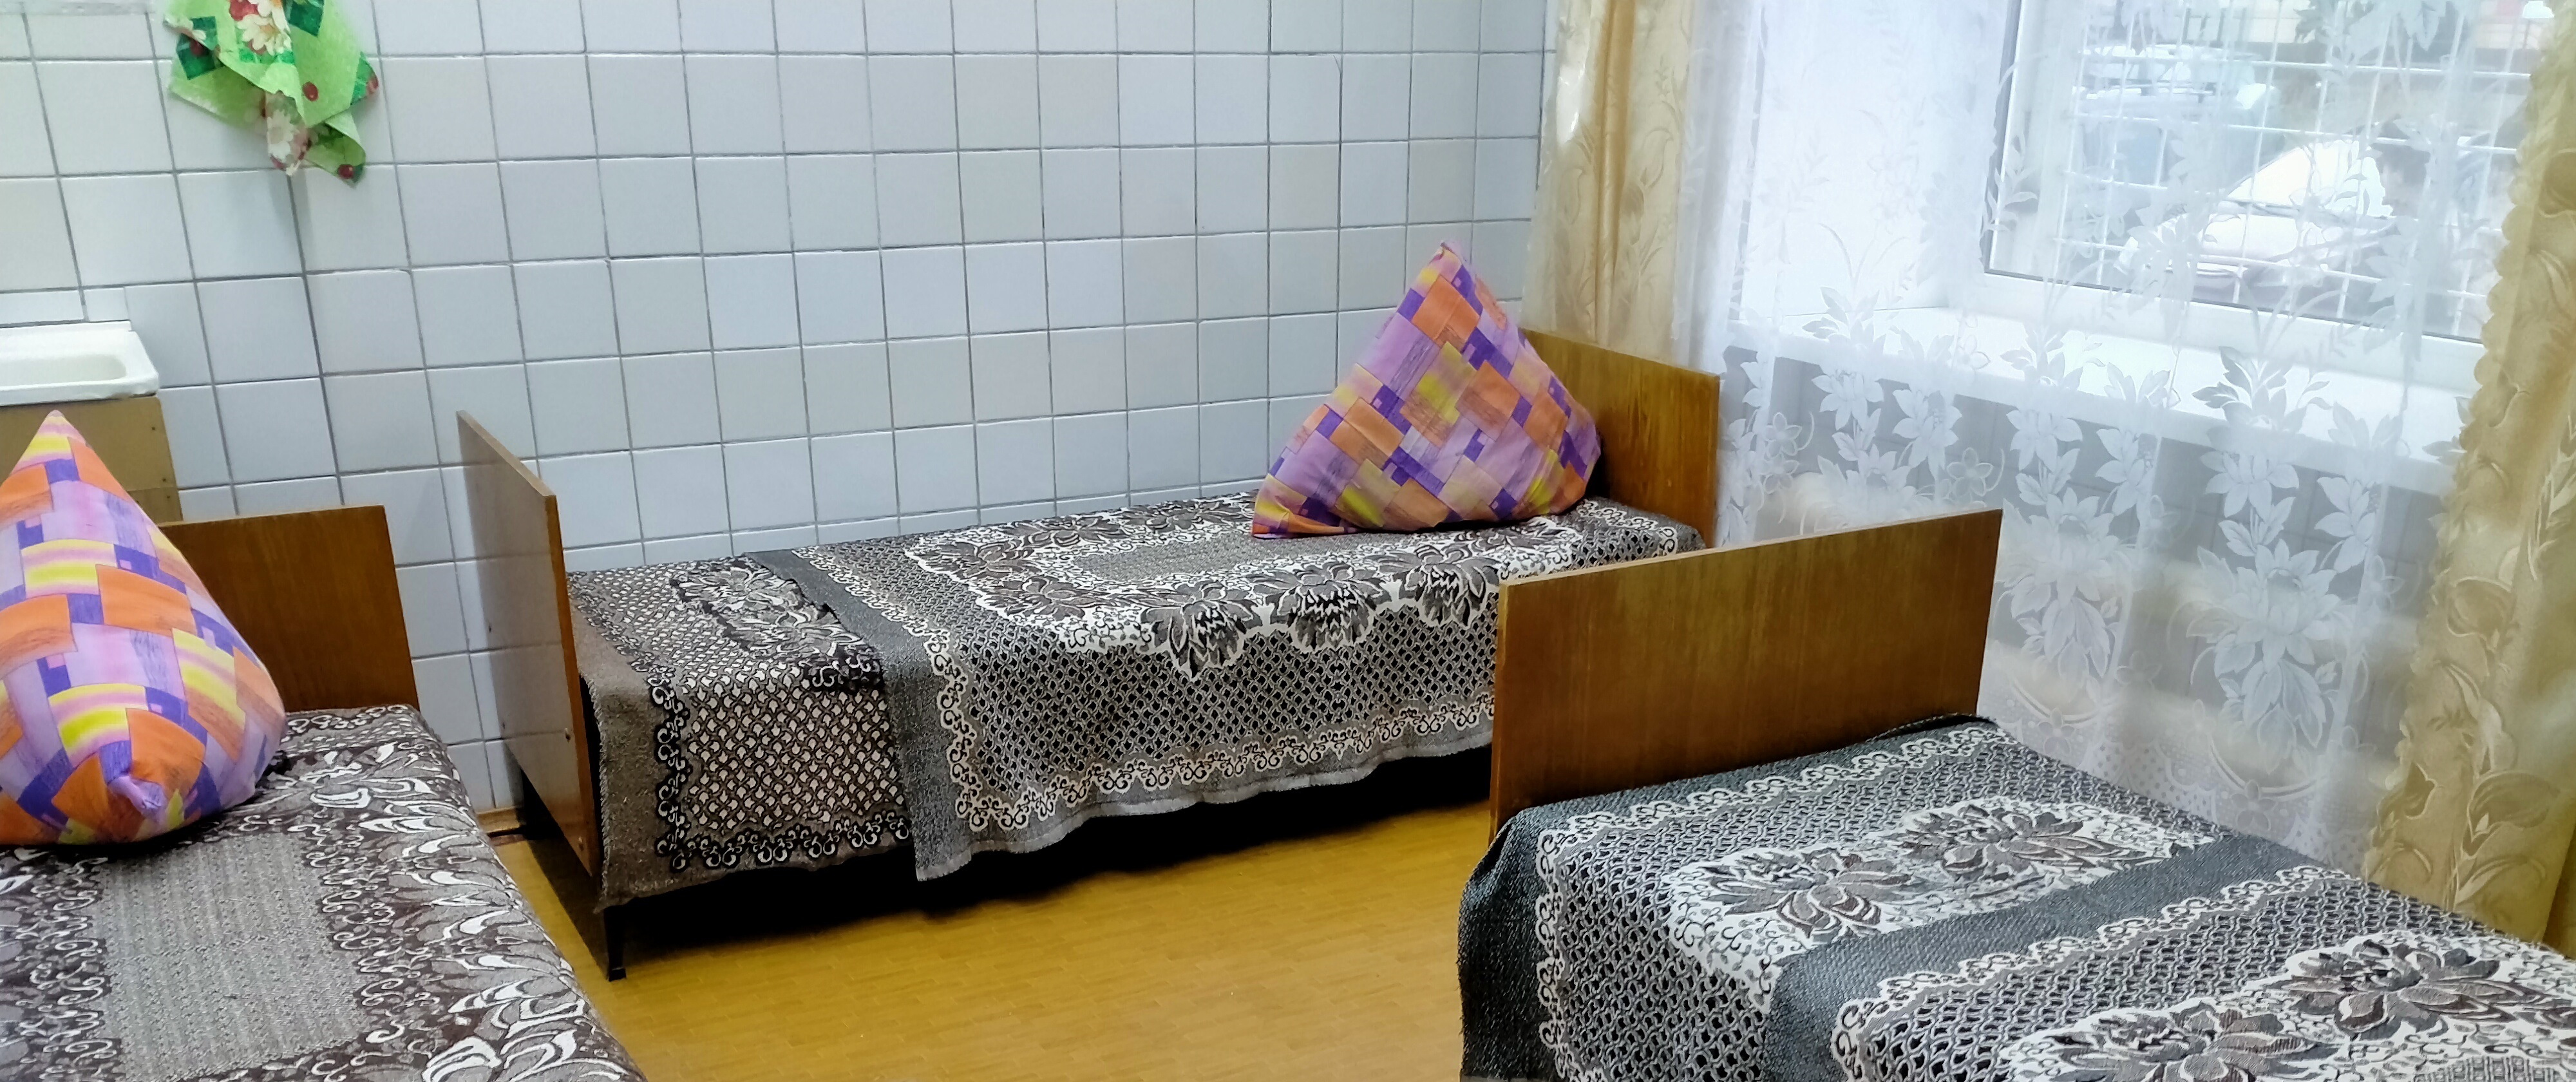 6 декабря в Йошкар-Оле откроется пункт обогрева для бездомных жителей